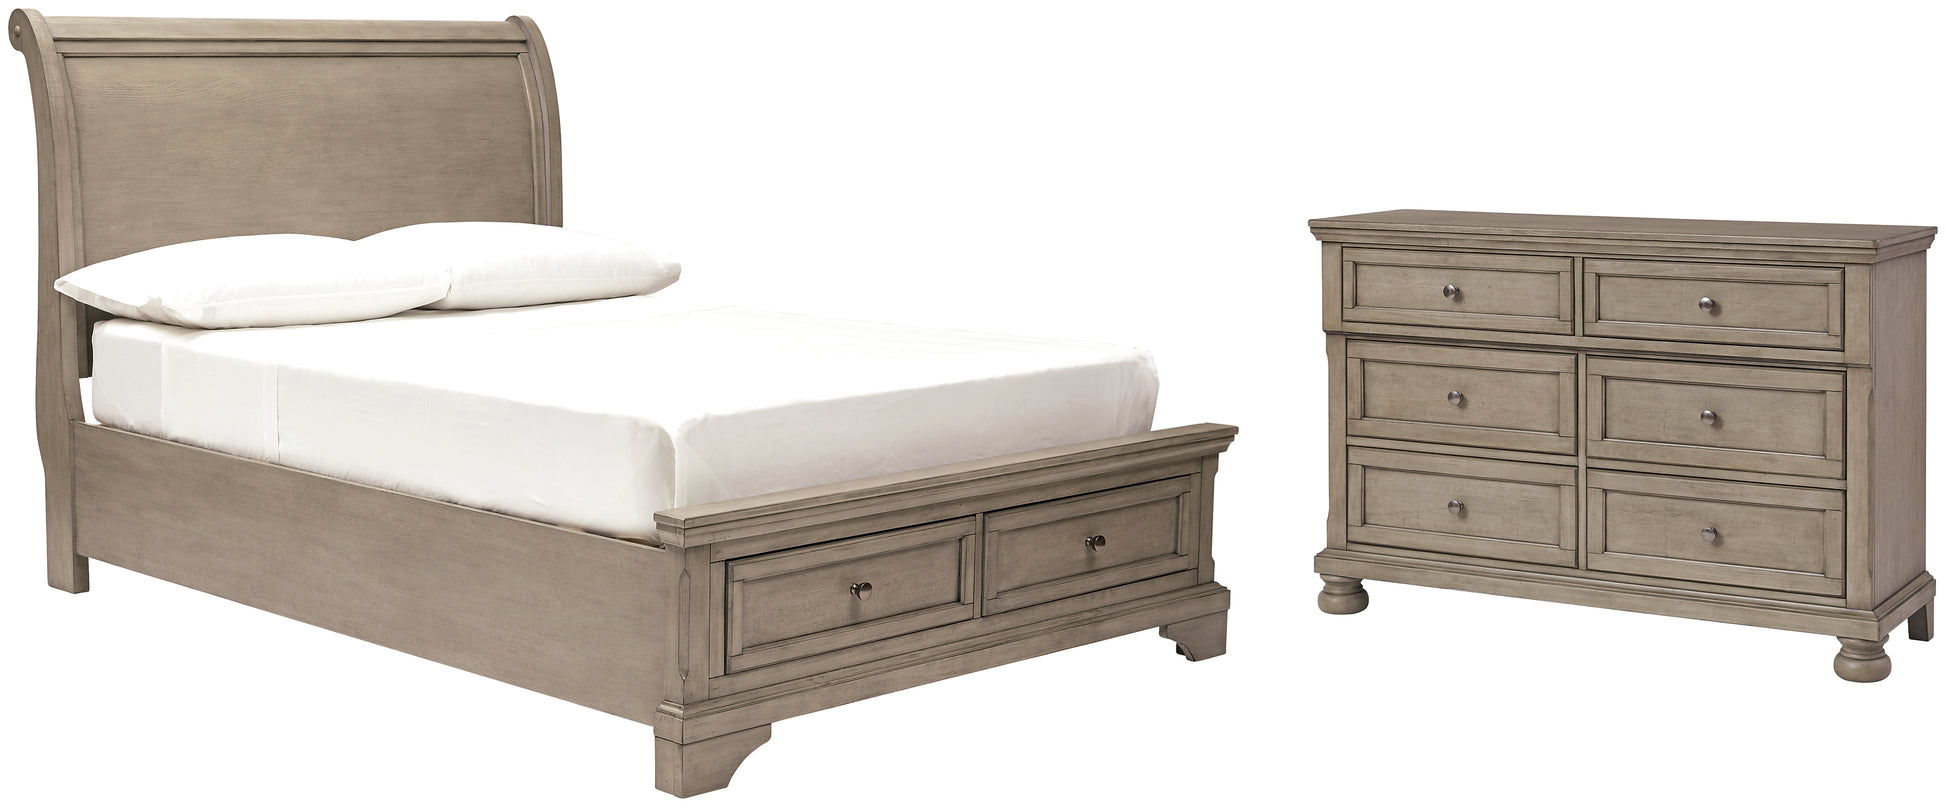 Lettner Full Sleigh Bed with Dresser JB's Furniture  Home Furniture, Home Decor, Furniture Store